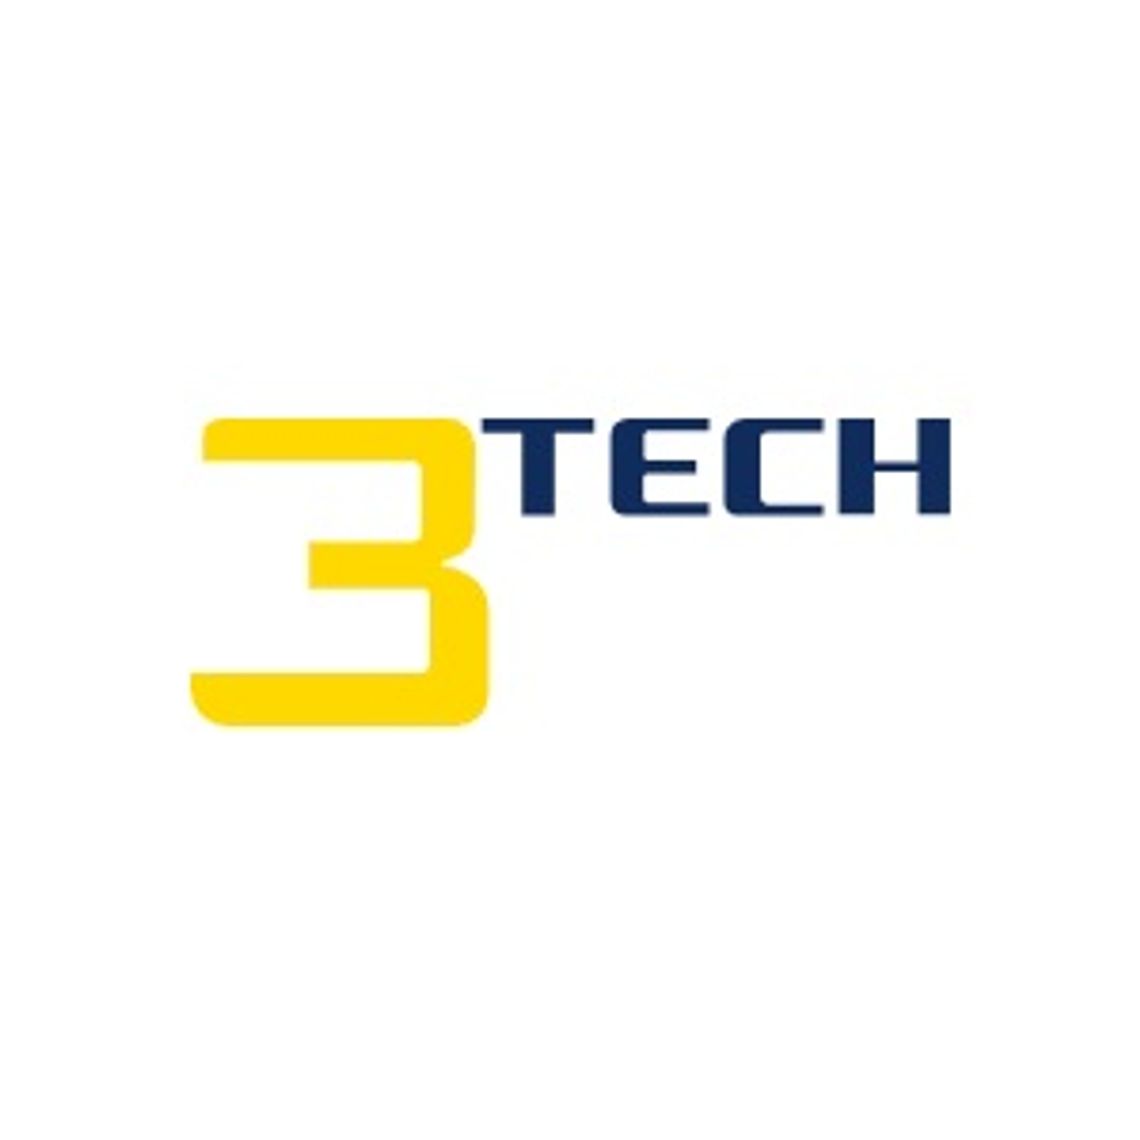 3Tech